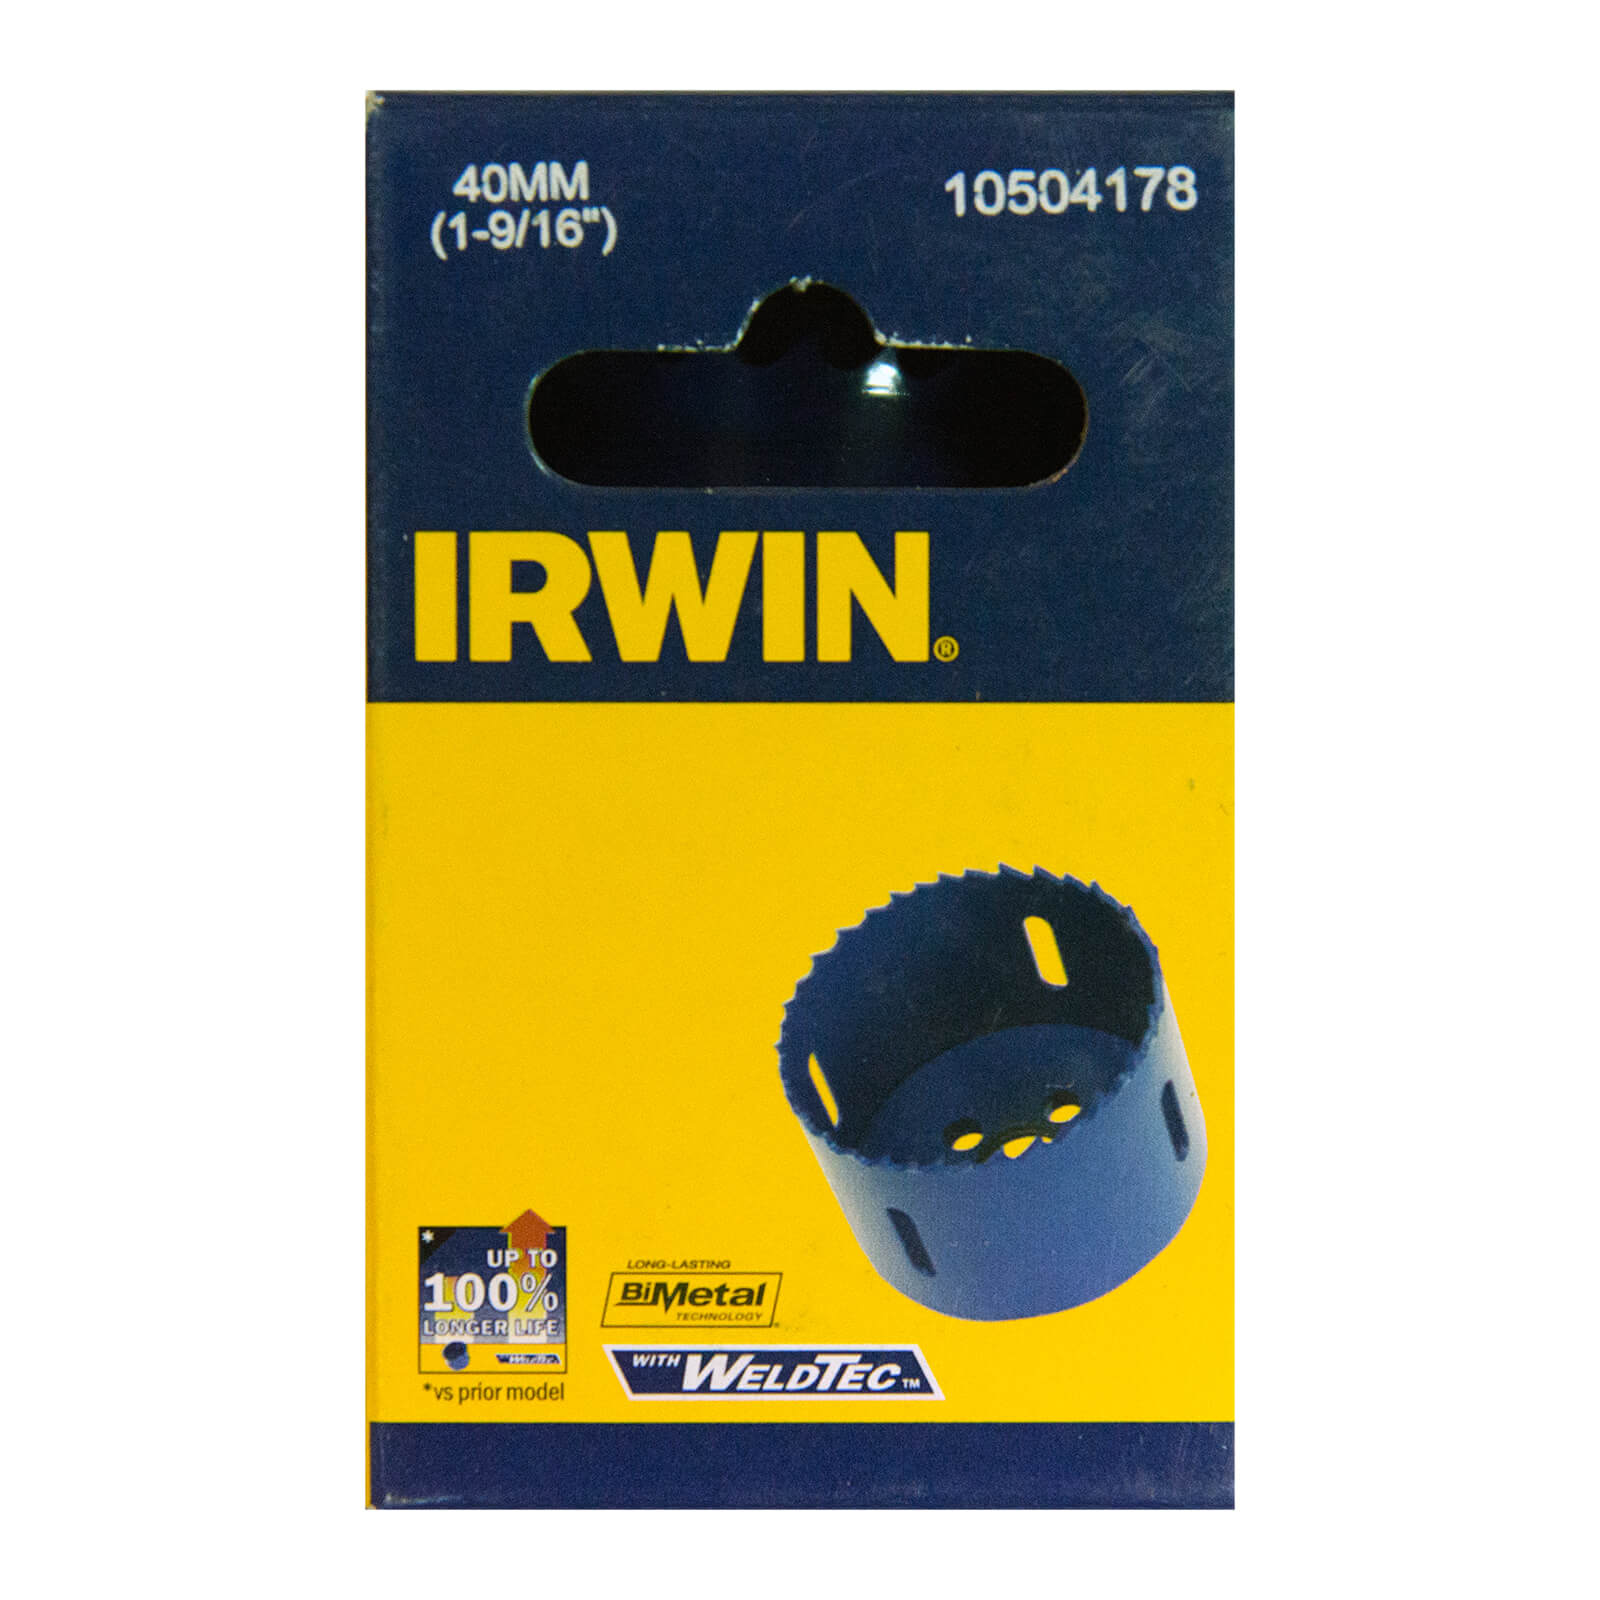 Photo of Irwin Bi-metal Hole Saw - 40mm